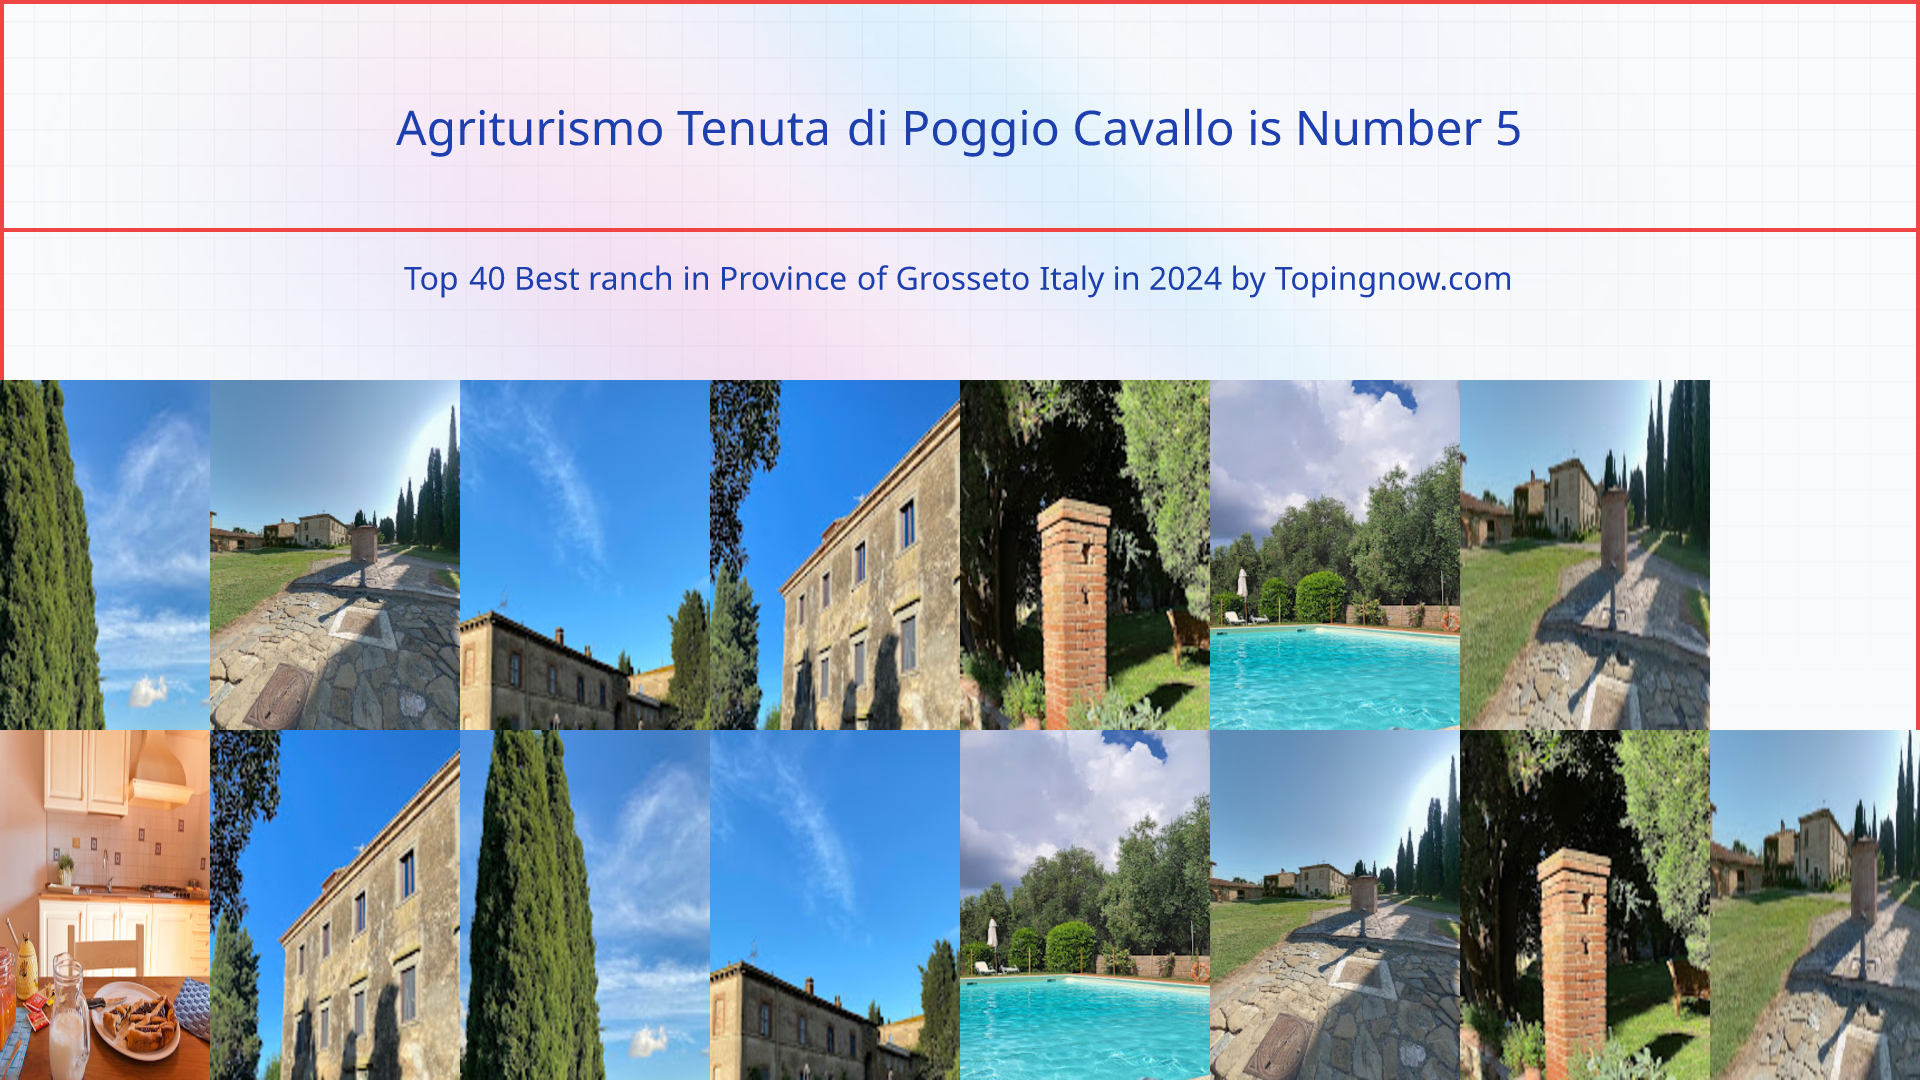 Agriturismo Tenuta di Poggio Cavallo: Top 40 Best ranch in Province of Grosseto Italy in 2024